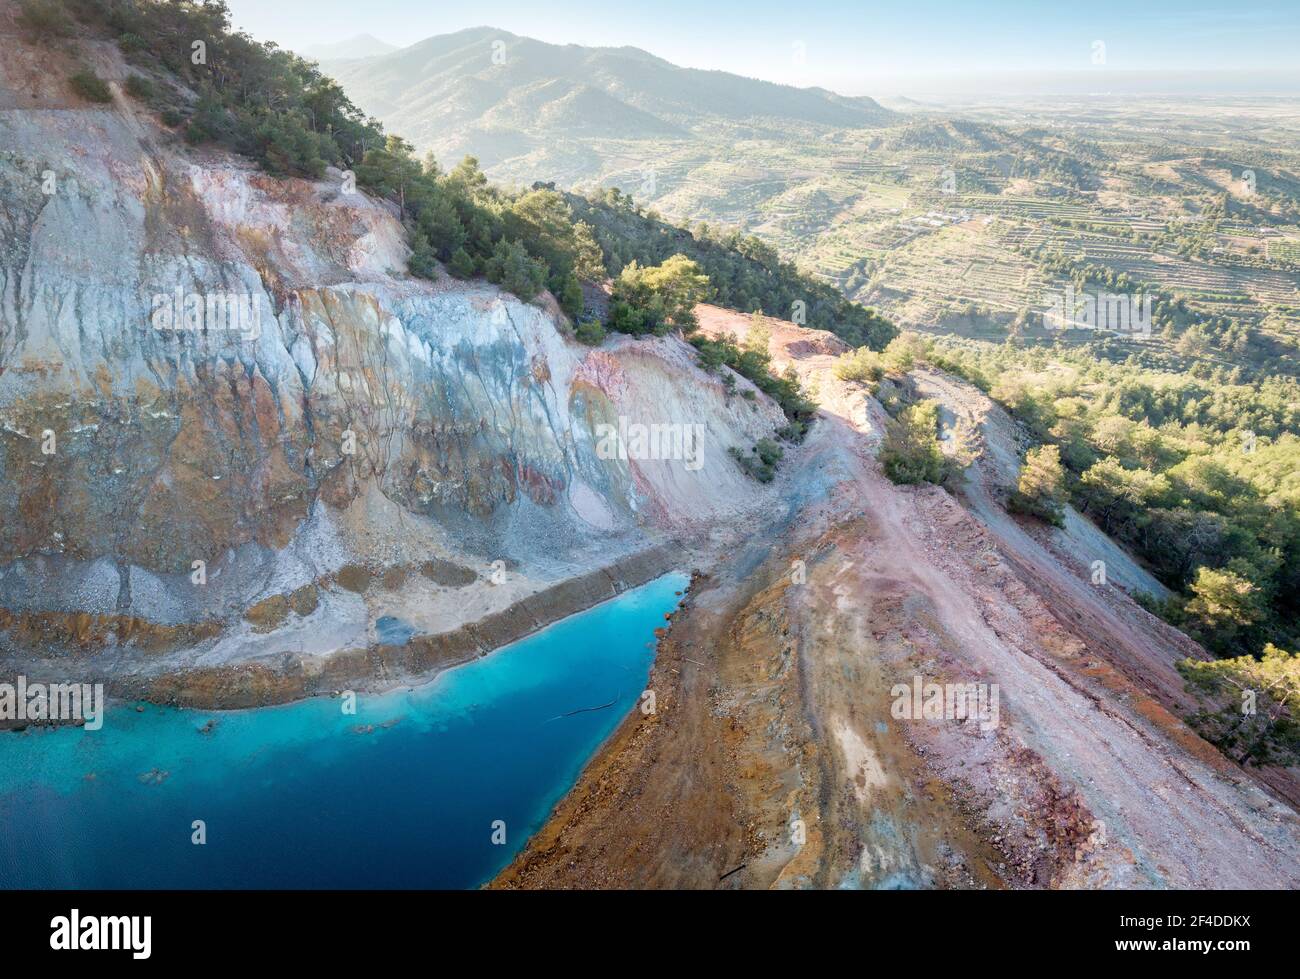 Vista aérea de la mina abandonada de Alestos, situada en Chipre. Lago azul y coloridas rocas ricas en depósitos de cobre y sulfuro Foto de stock